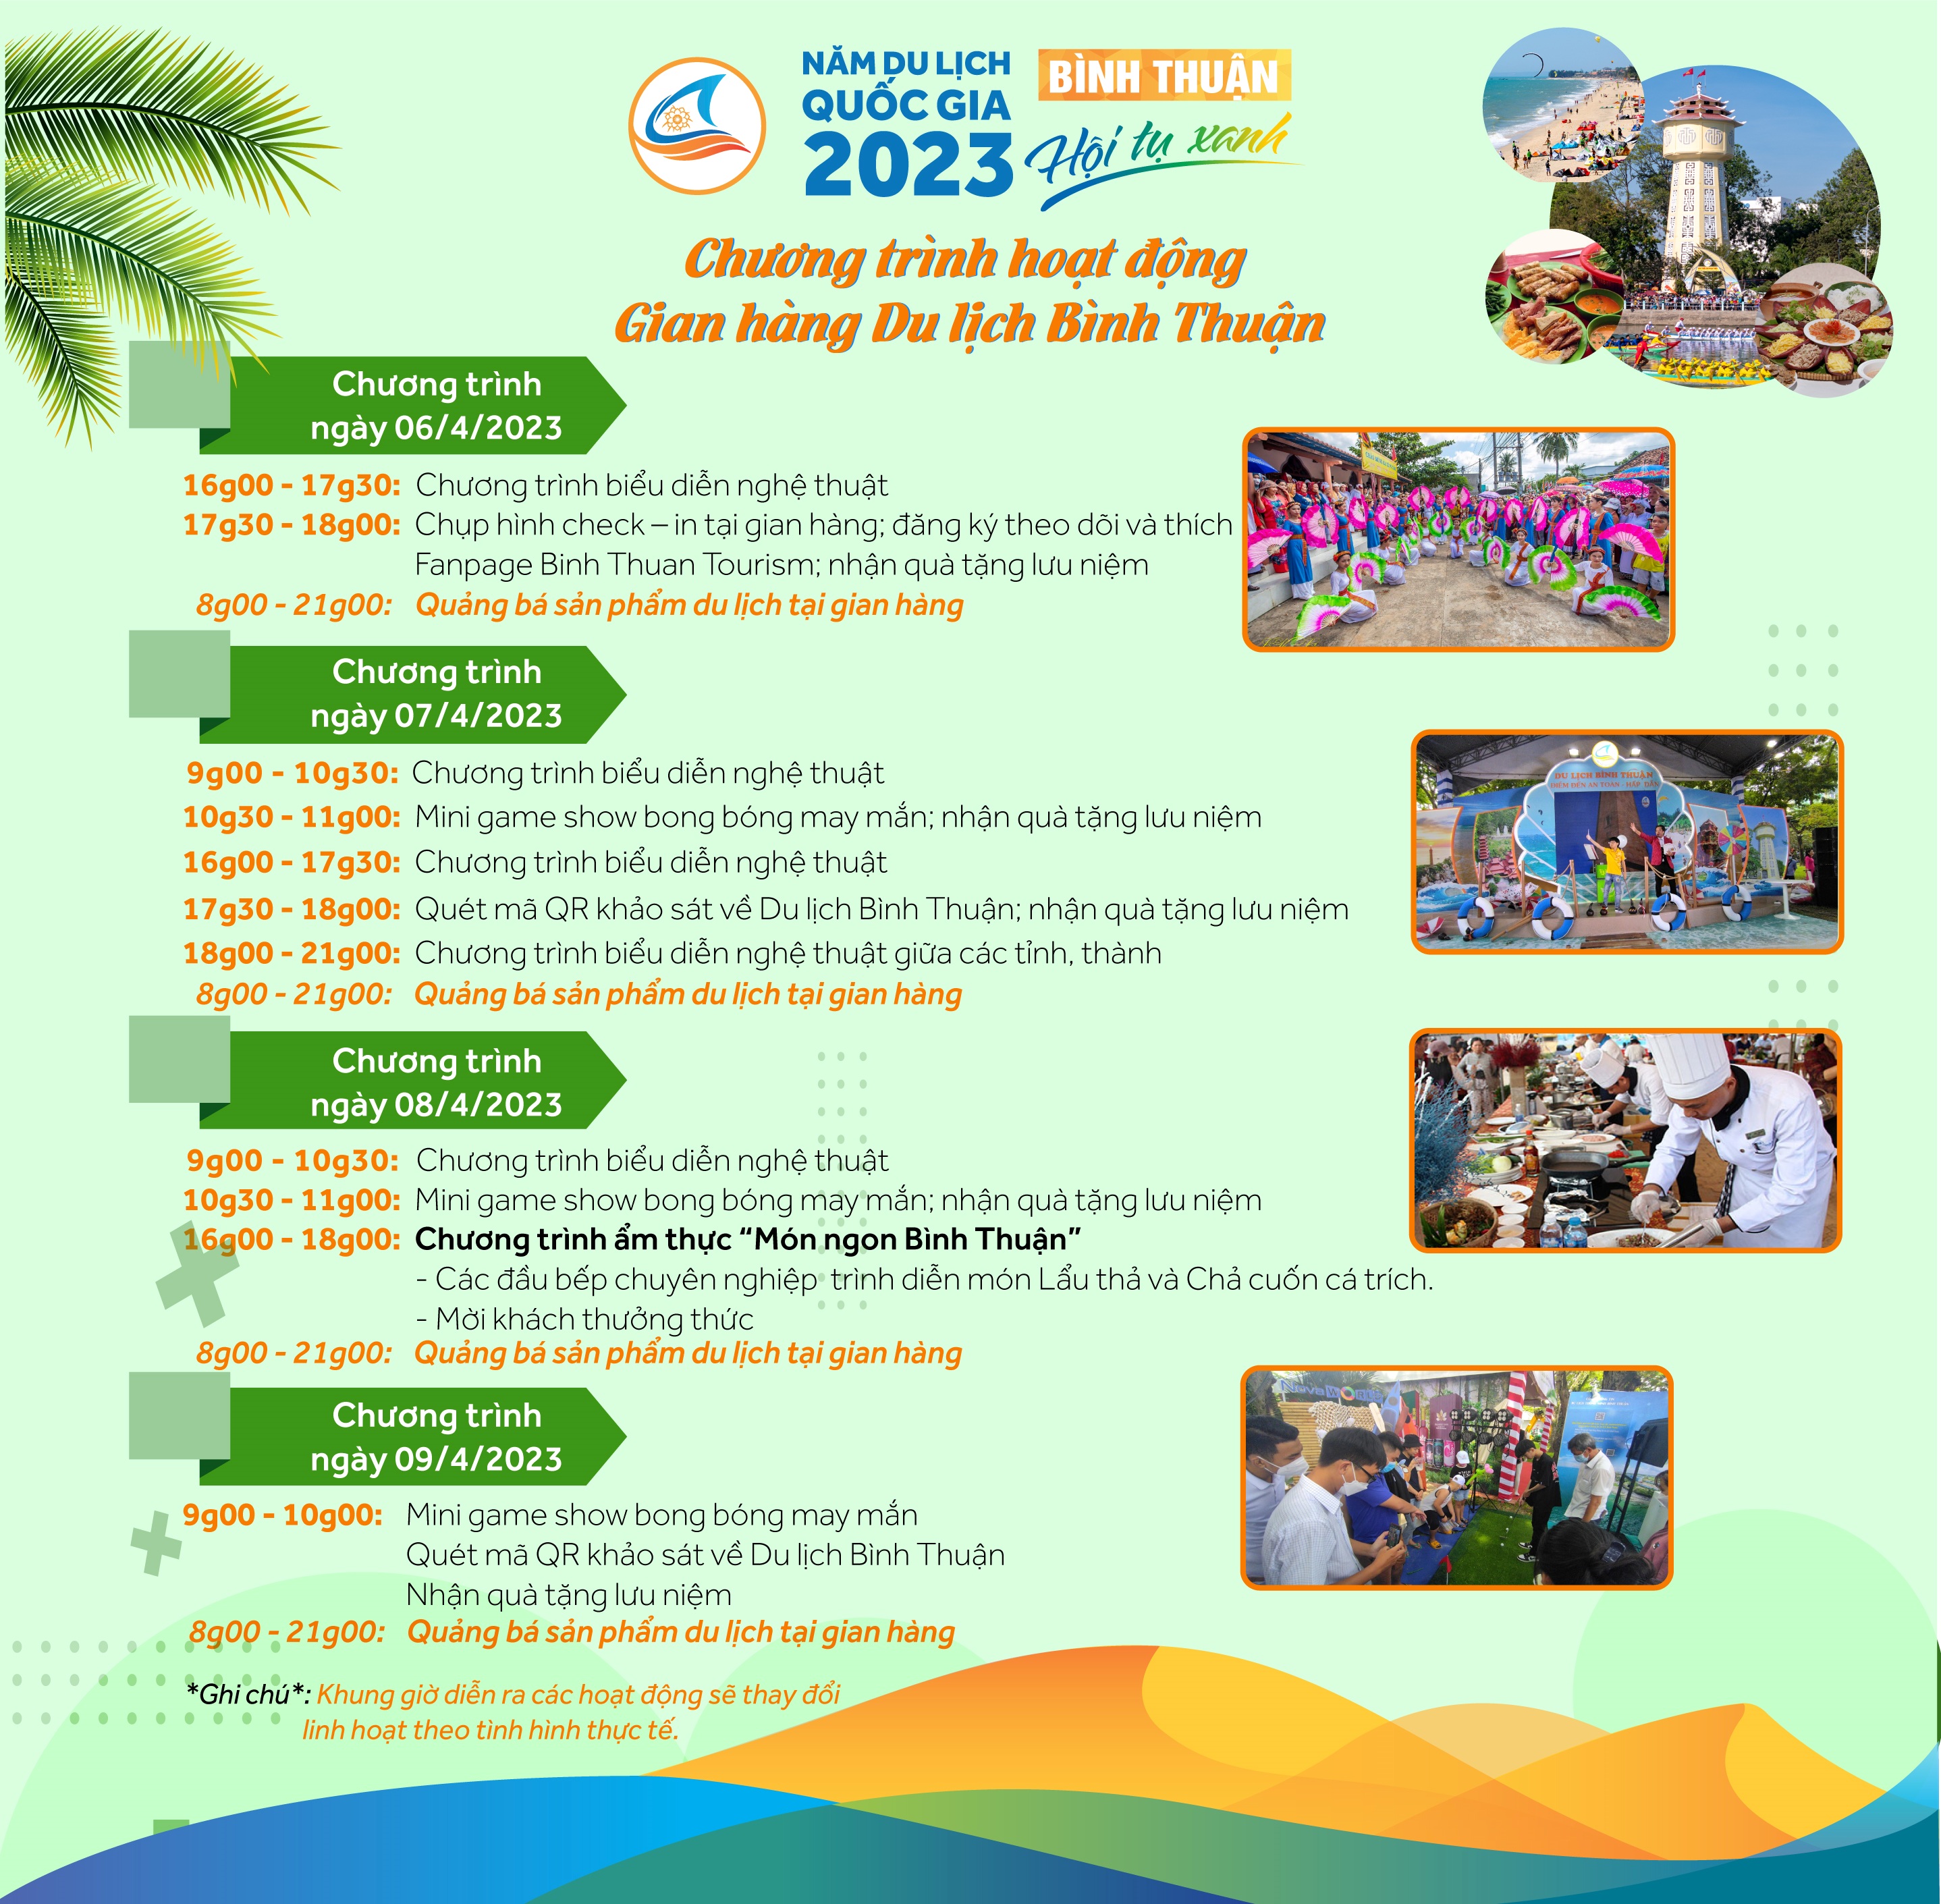 Du lịch Bình Thuận tham dự Ngày hội Du lịch TP.HCM năm 2023 với nhiều hoạt động và ưu đãi lớn - 1